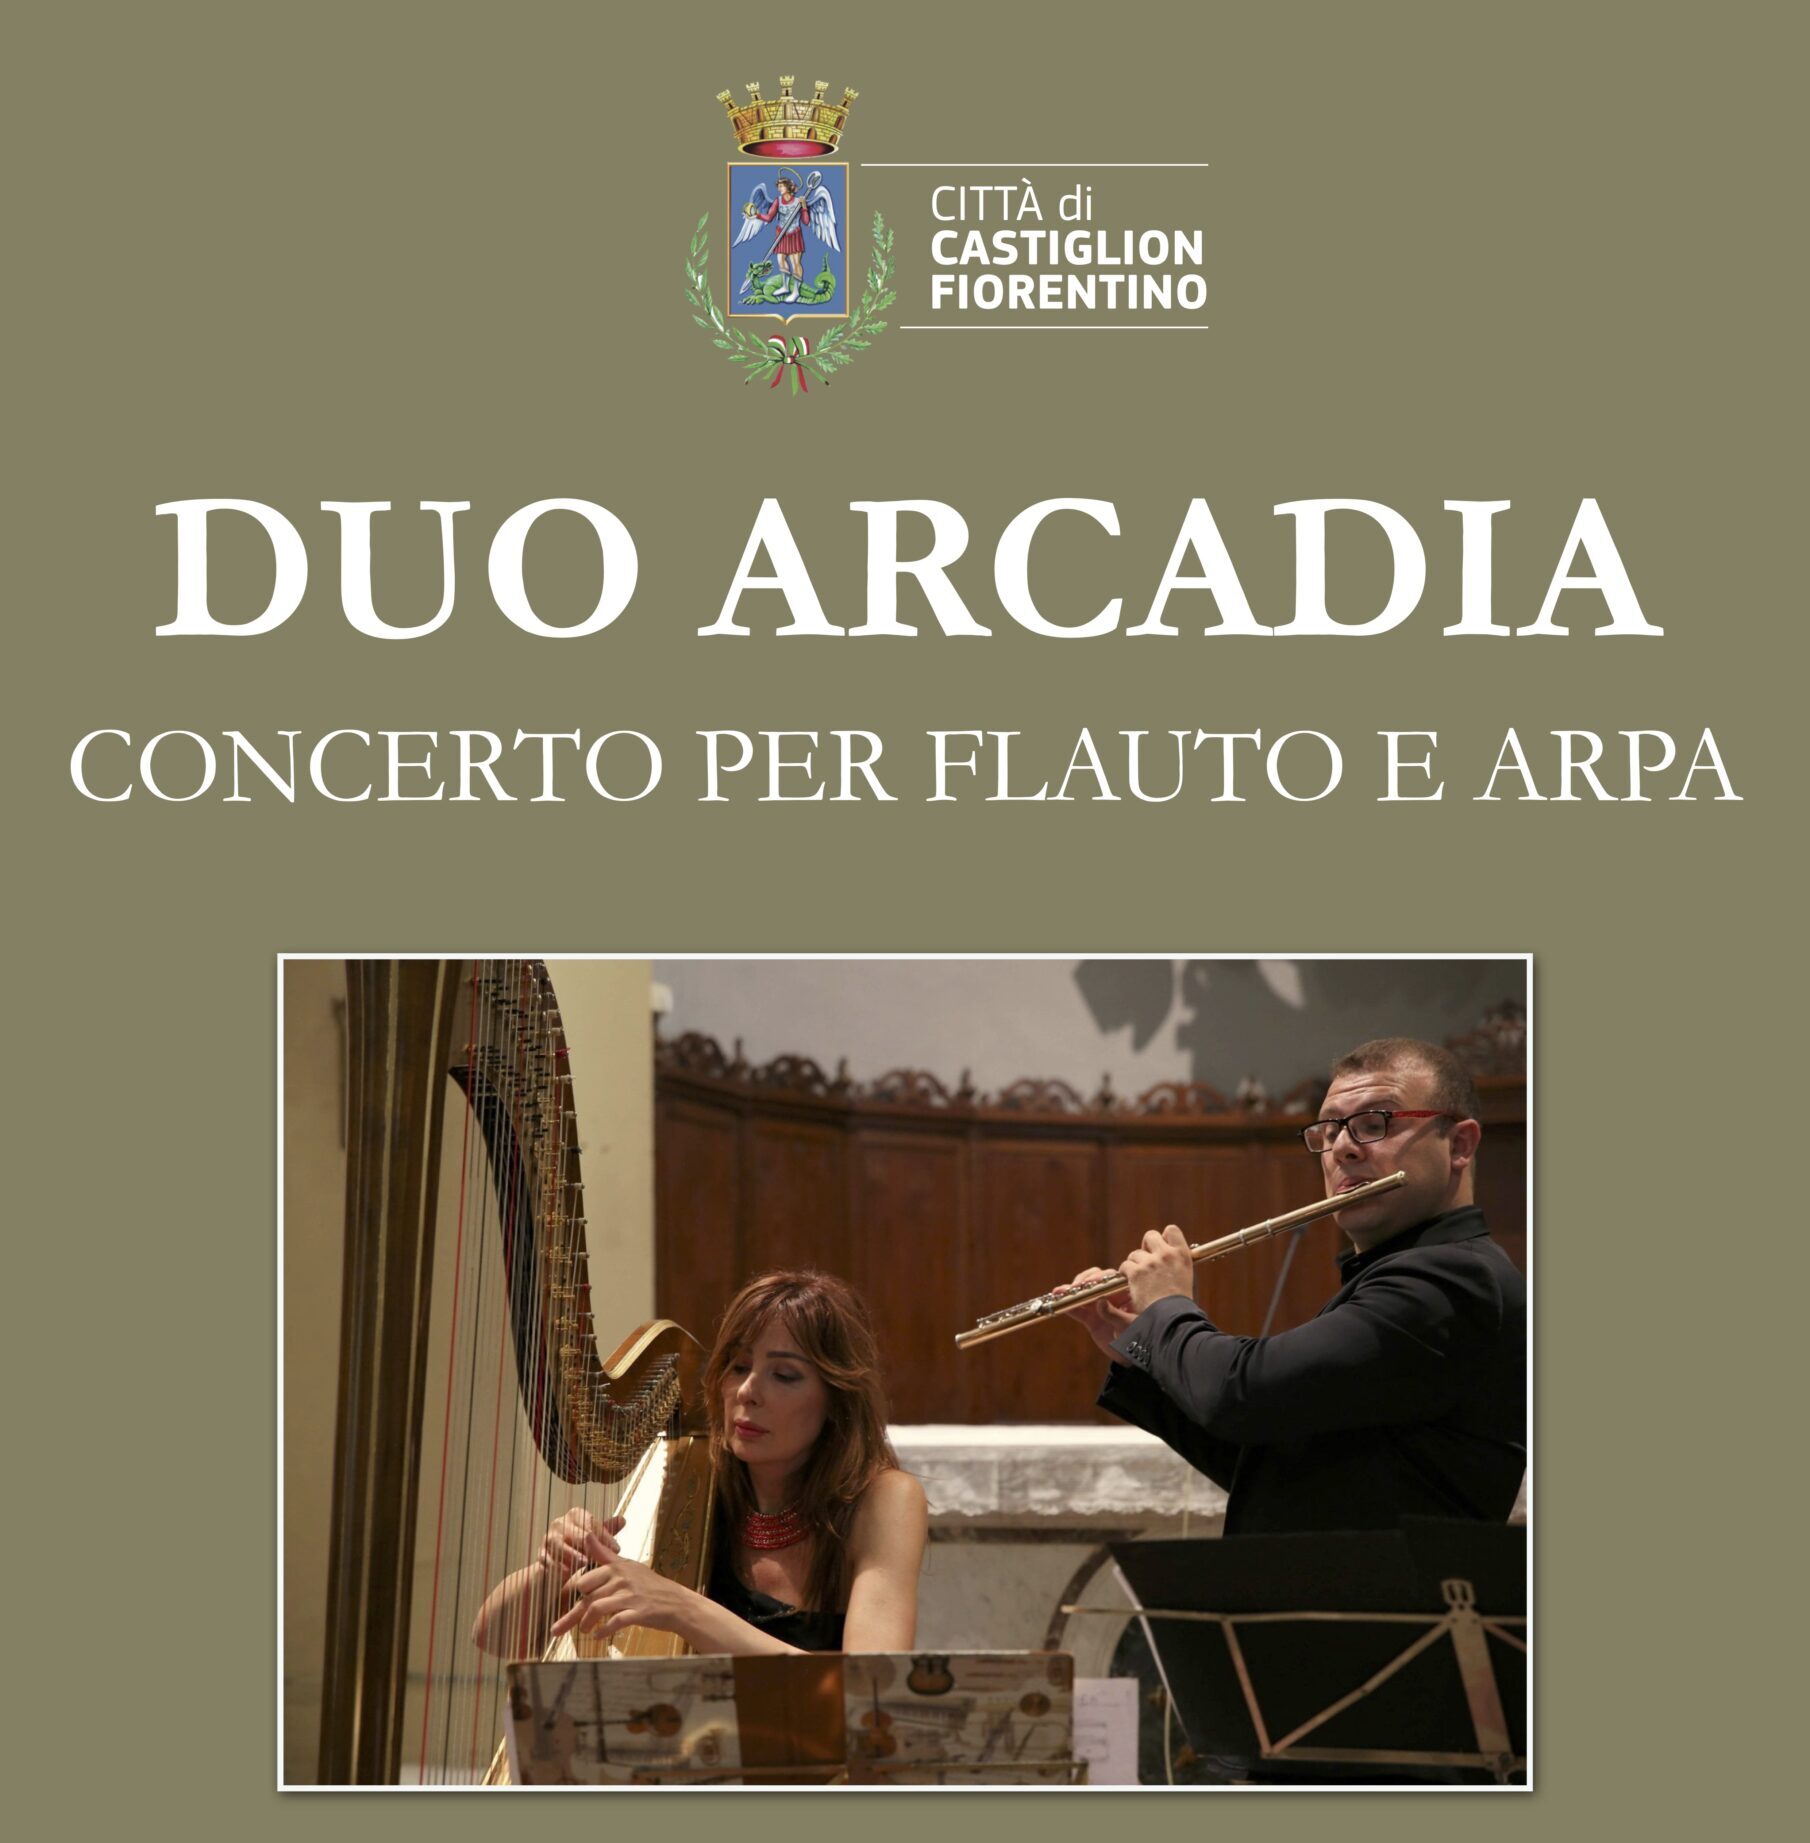 Castiglion Fiorentino, sabato il concerto del “Duo Arcadia”